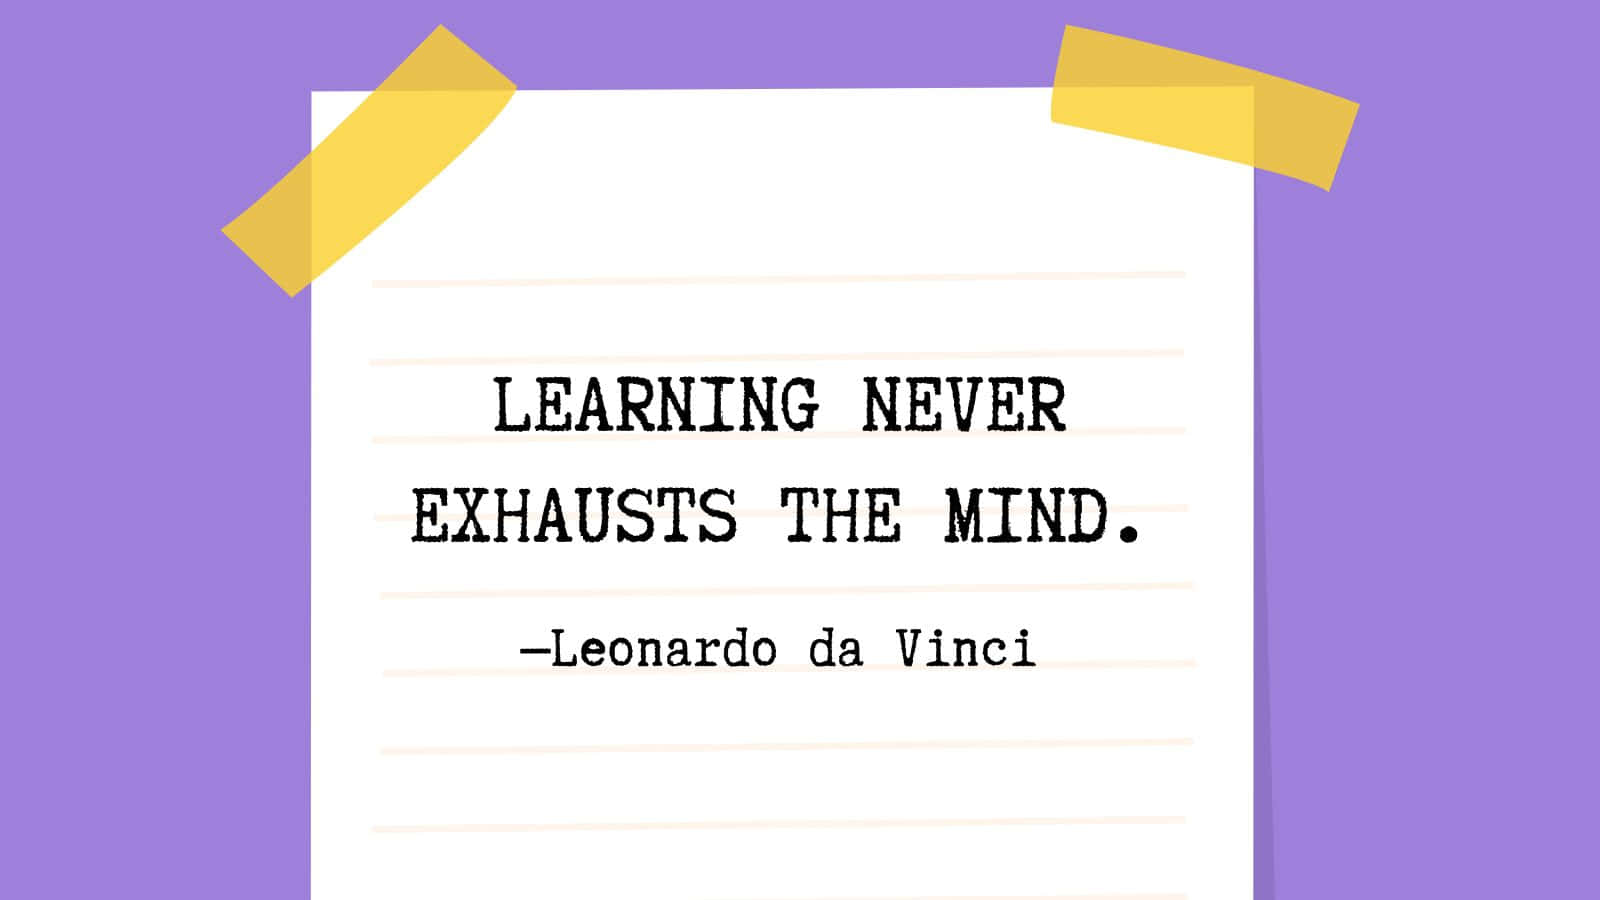 Da Vinci Education Quote Wallpaper